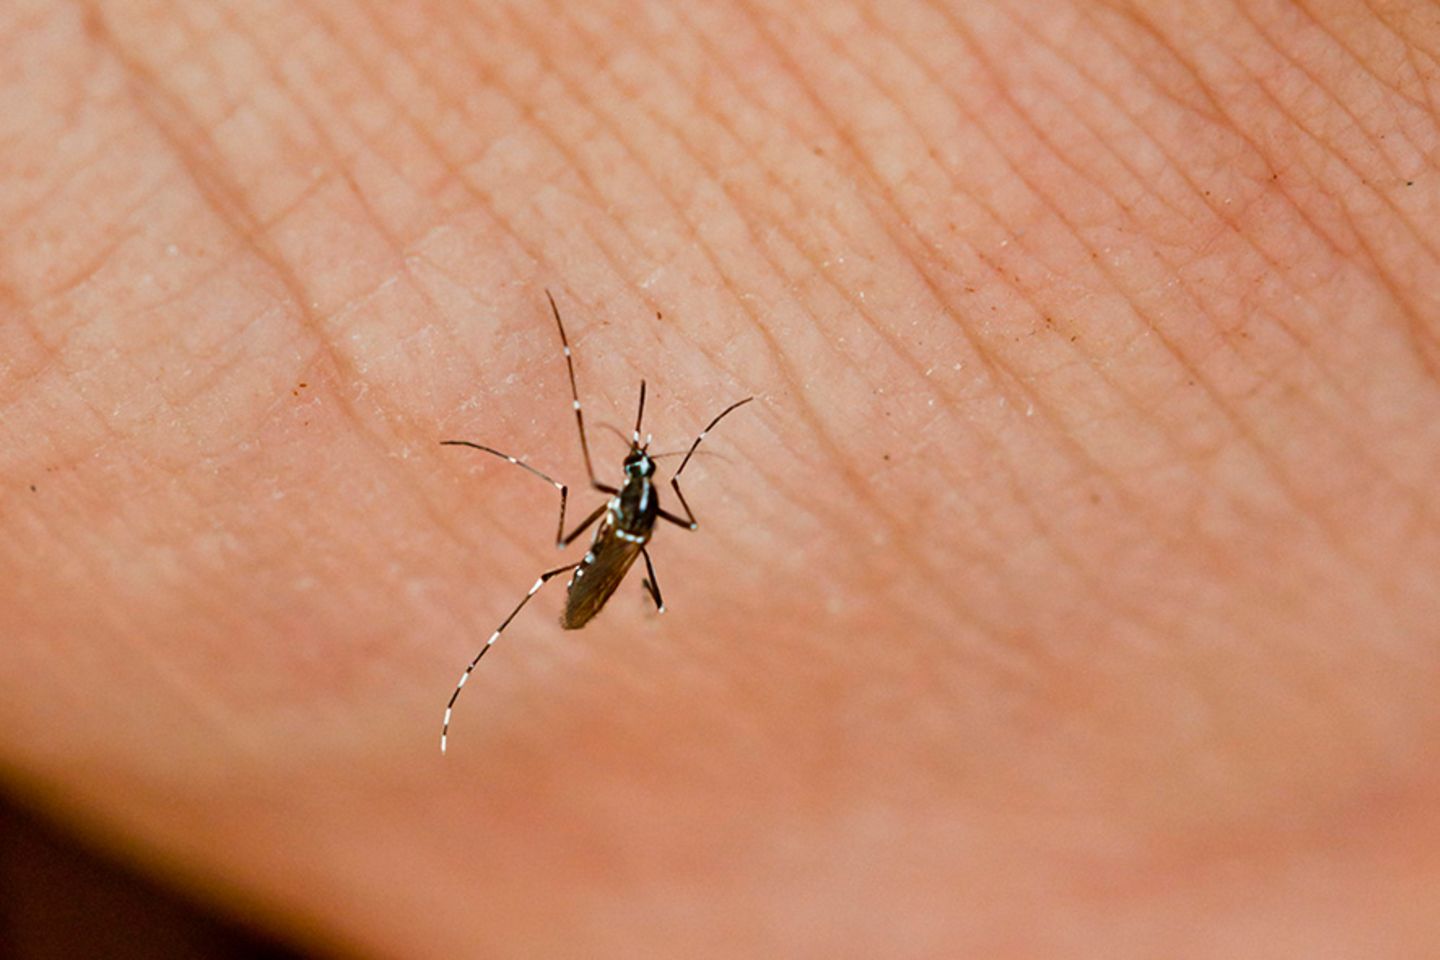 Mücken: Die Asiatische Tigermücke verbreitet unter anderem das Denguefieber und das Chikungunyavirus. Sollte man sie deshalb ausrotten?